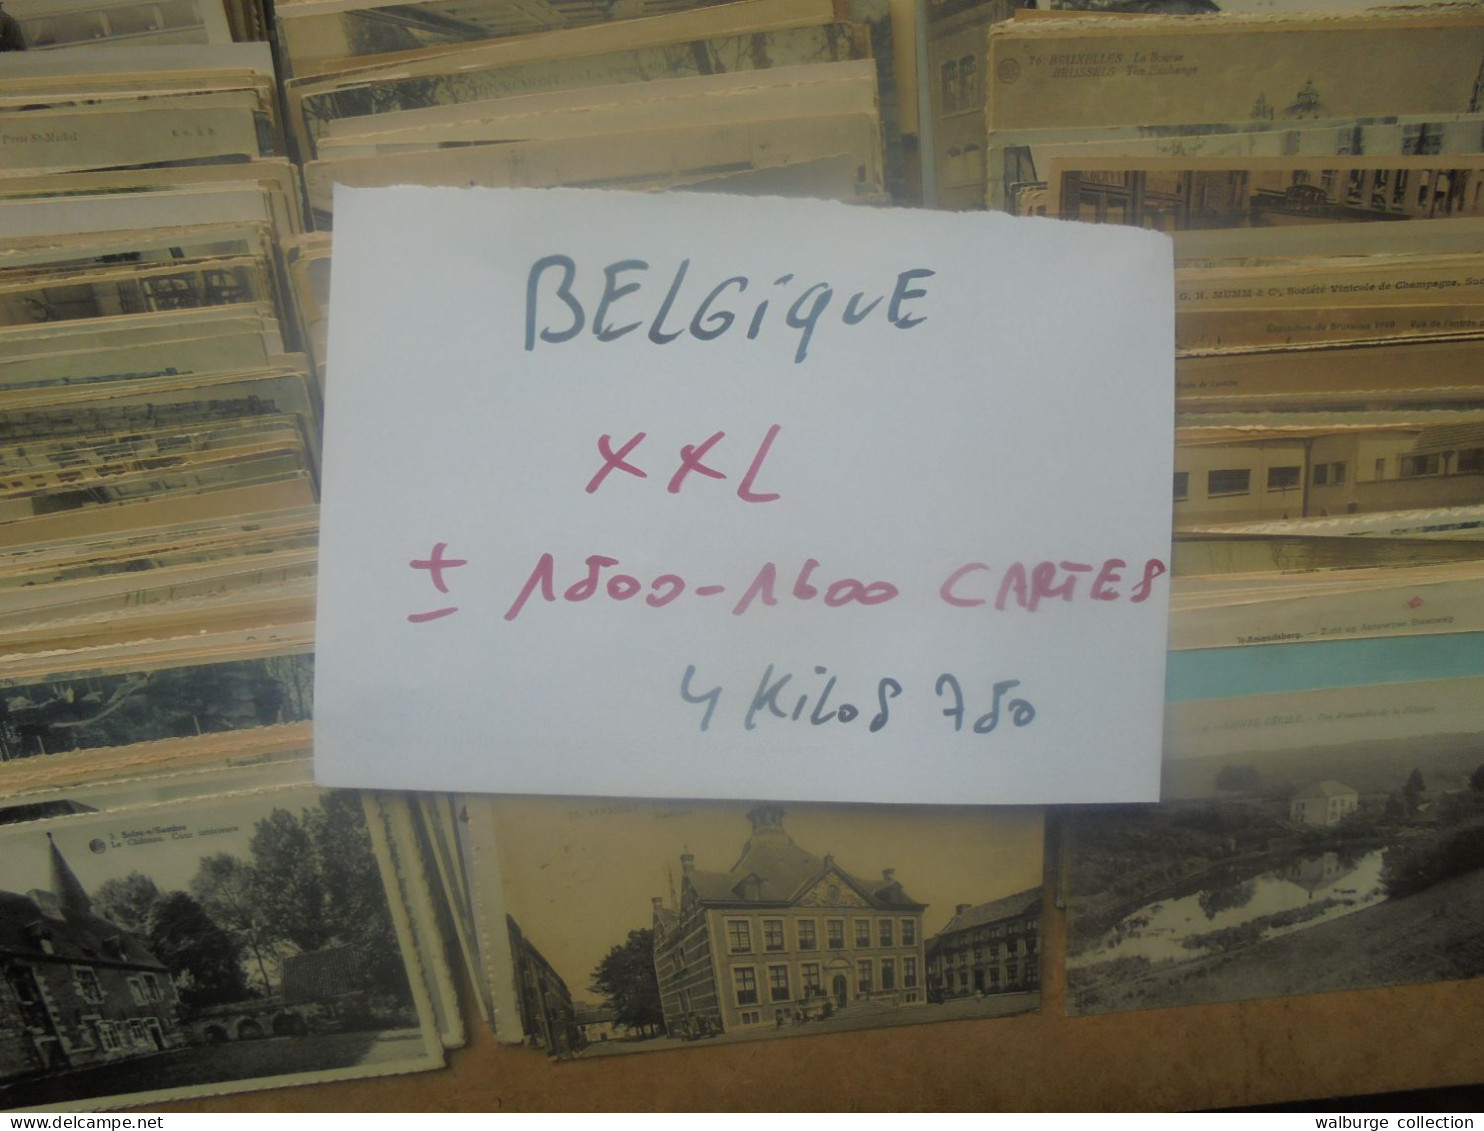 +++BELGIQUE BEAU LOT XXL ! ENVIRON 1500-1600 CARTES (Pas De Côte Belge) MAJORITES ANCIENNES+++ 4 KILOS 750 (Lire Ci-bas) - 500 Karten Min.